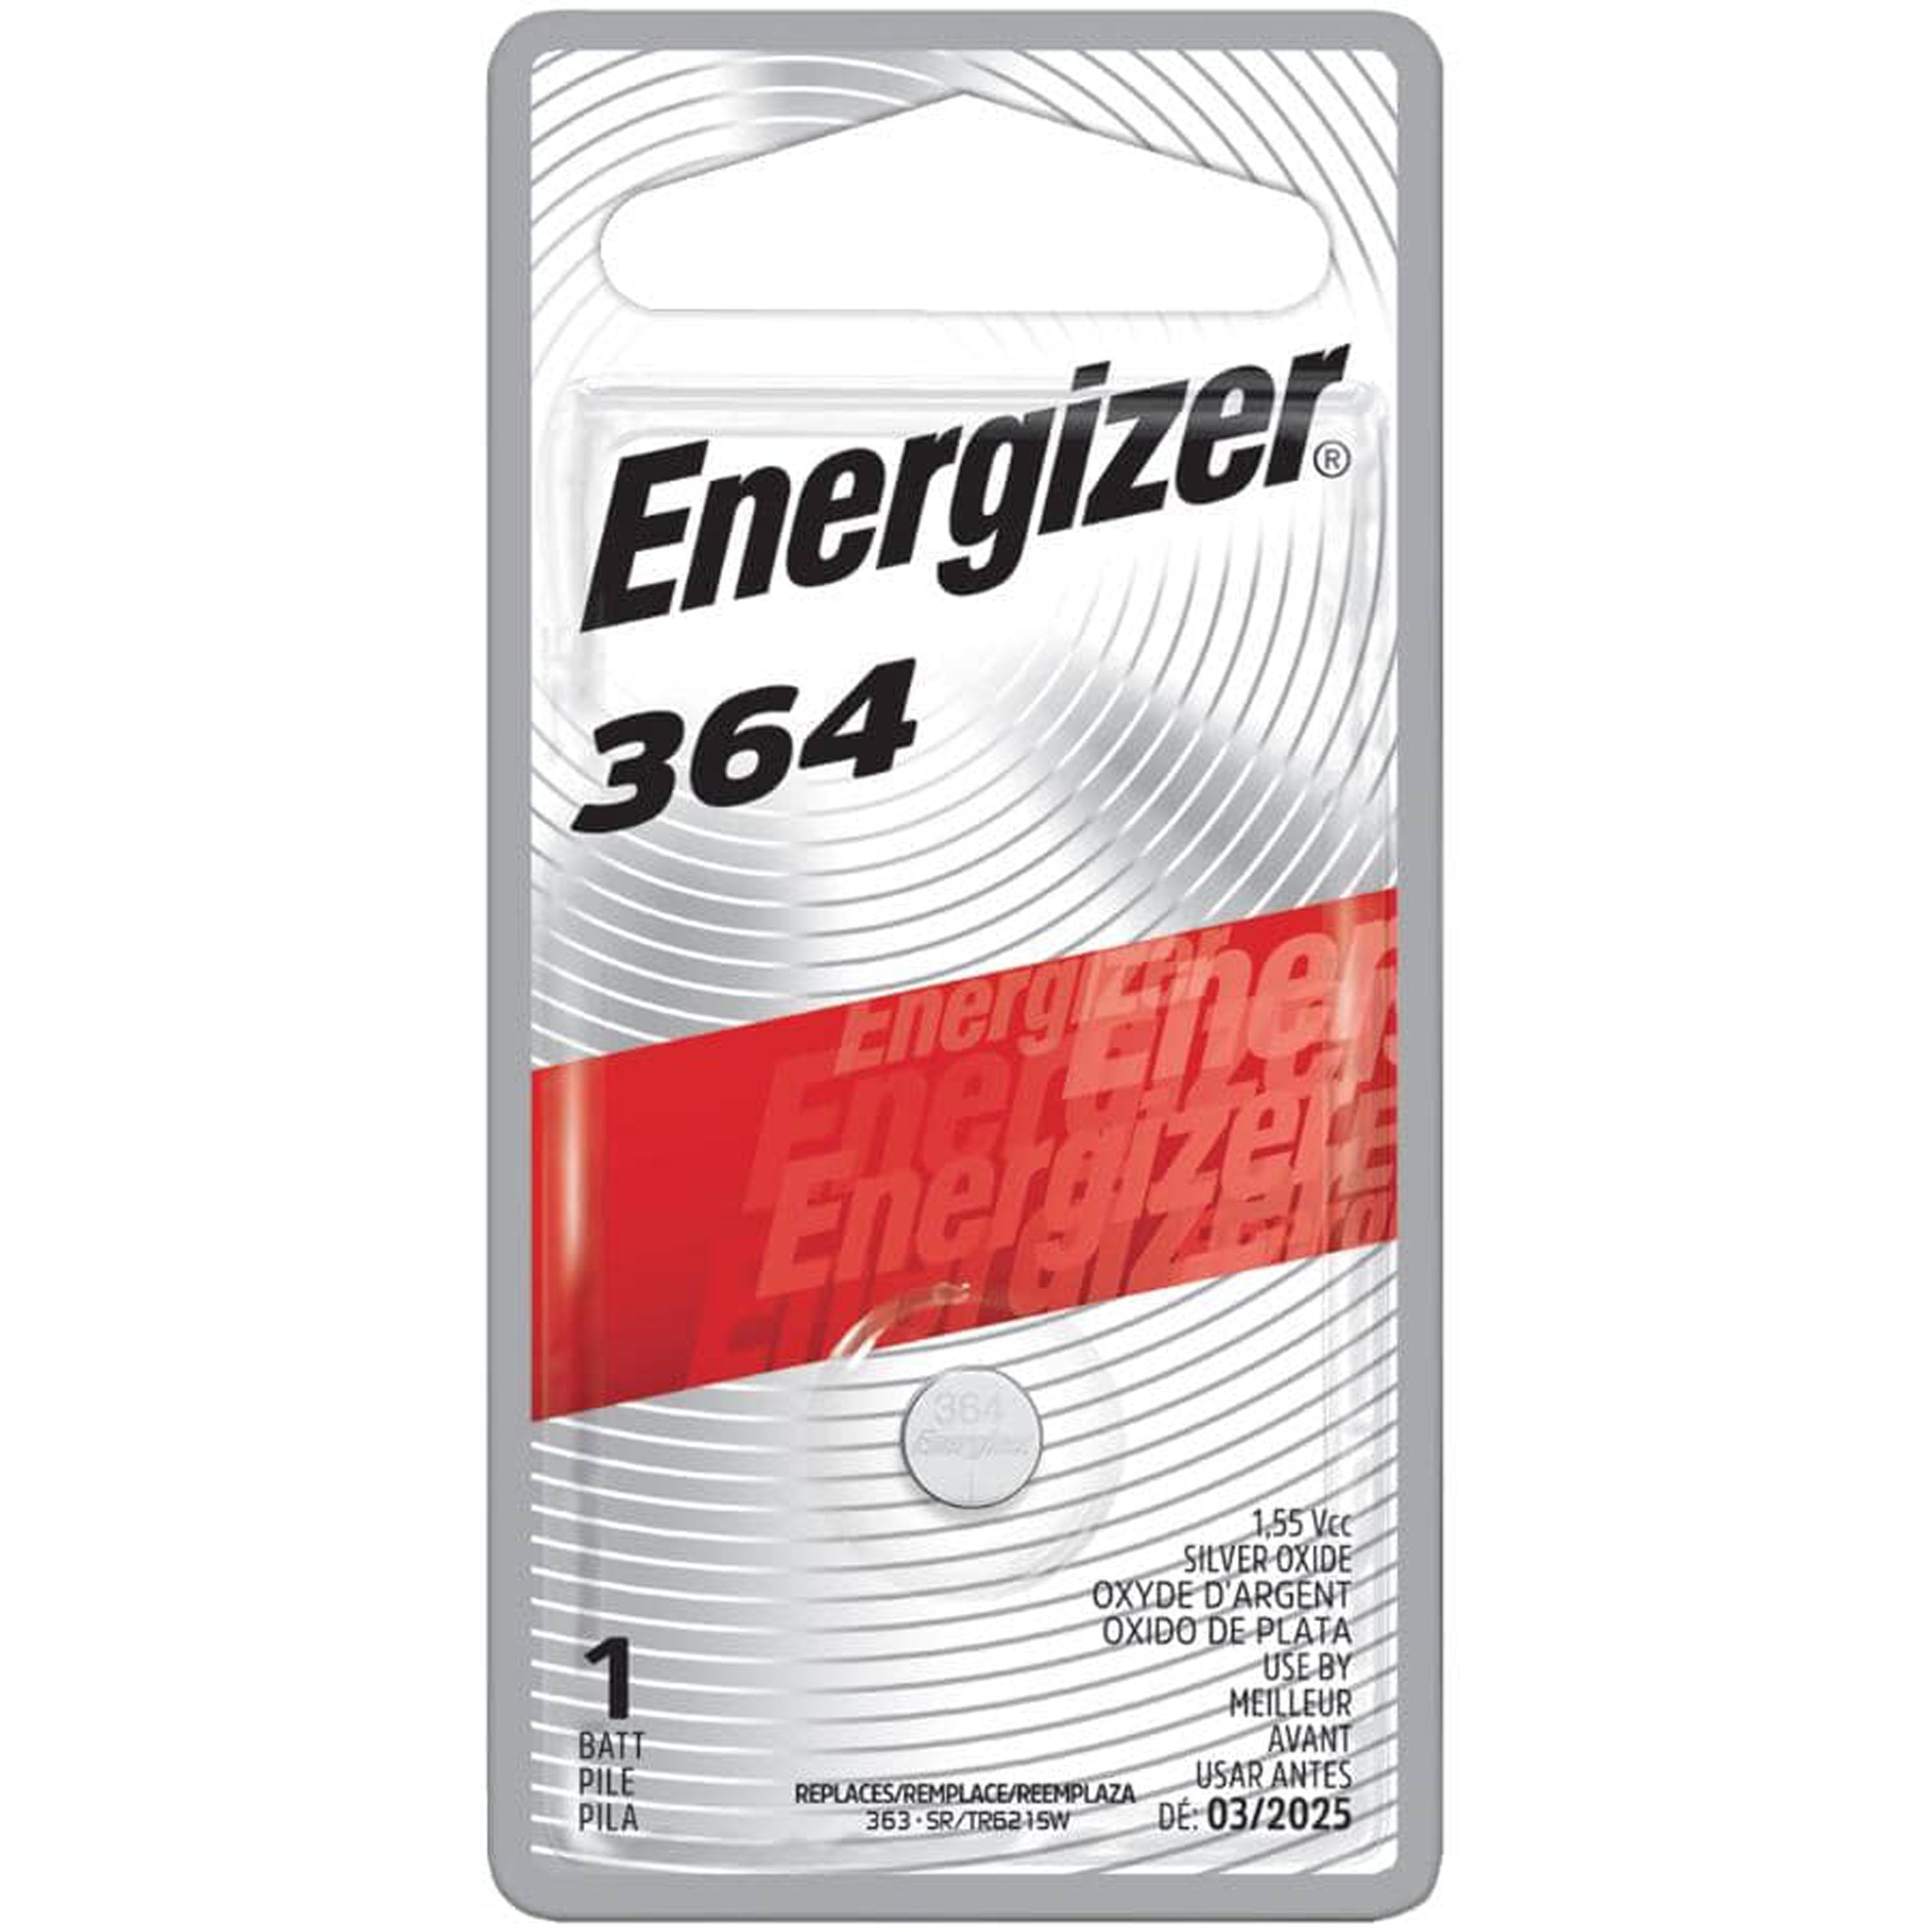 Energizer Zero Mercury 364 Battery